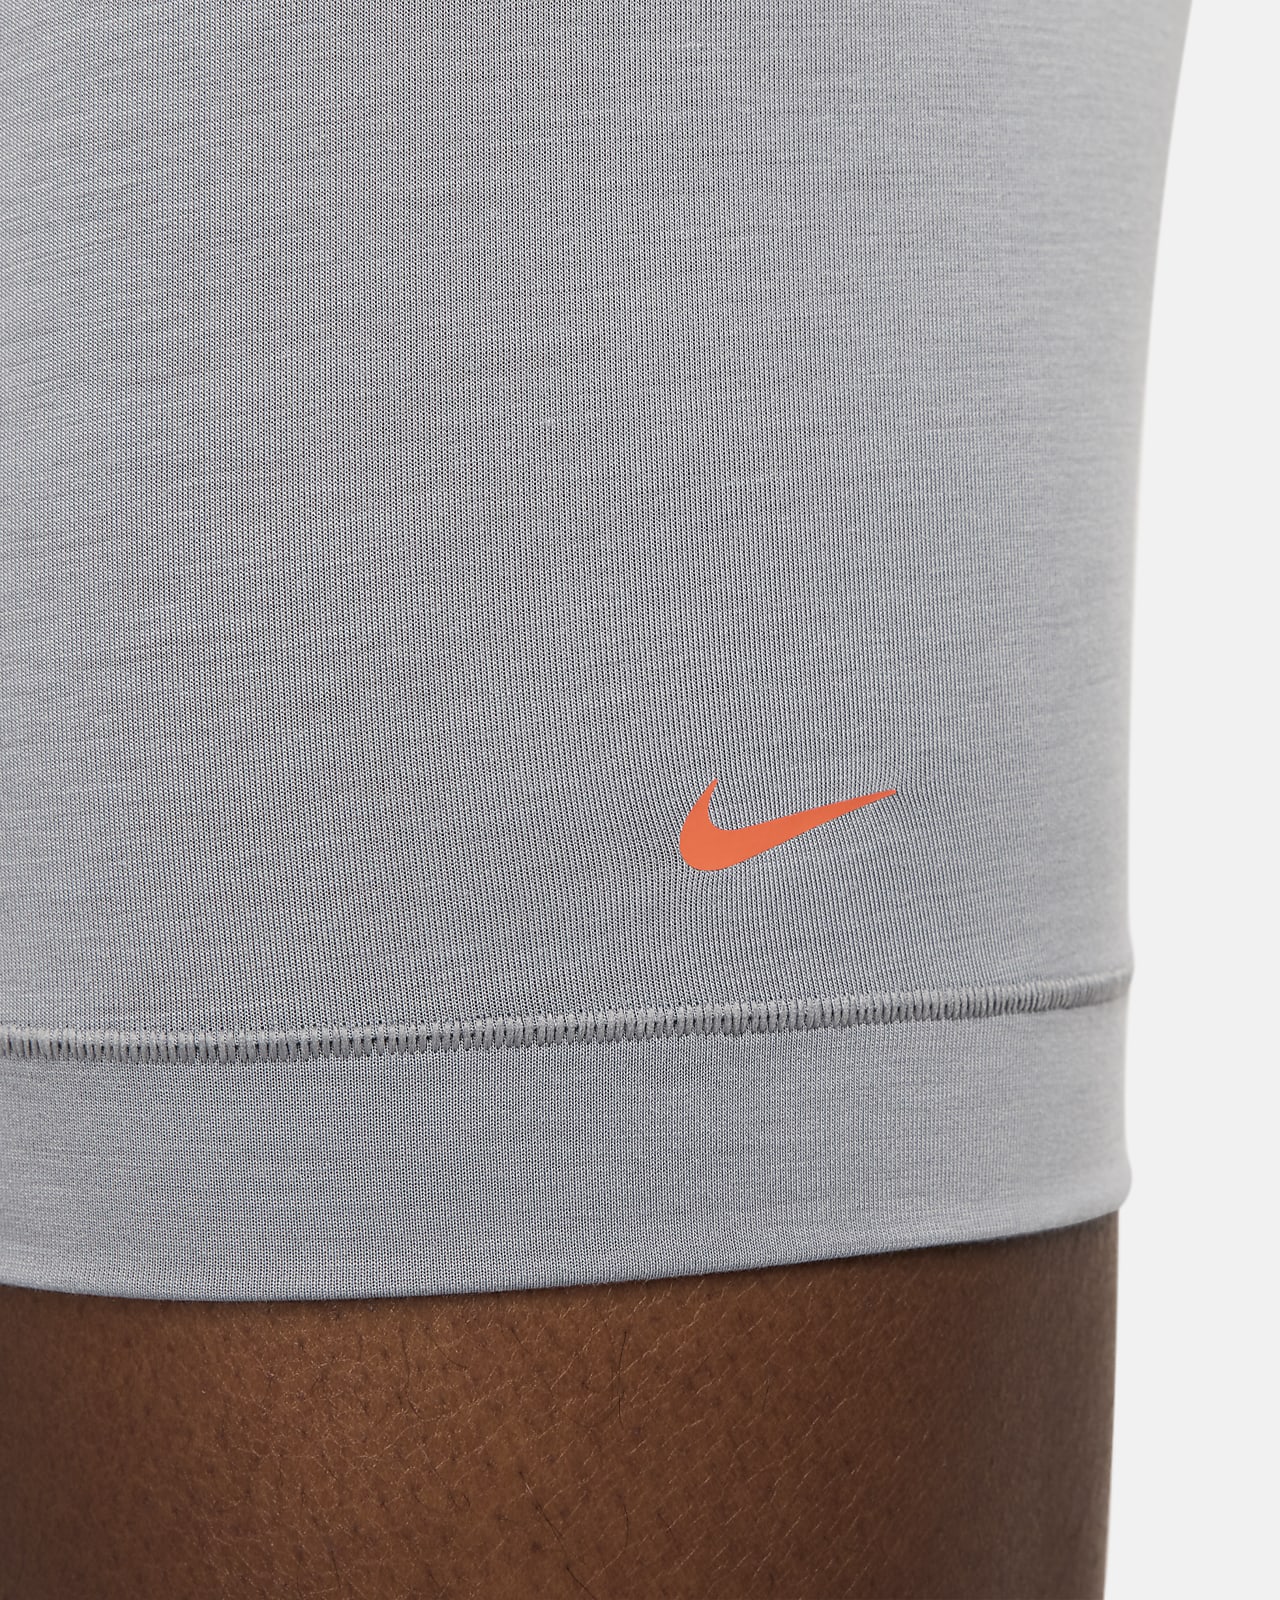 Nike Dri-FIT Ultra Comfort Men's Boxer Briefs (3-Pack)